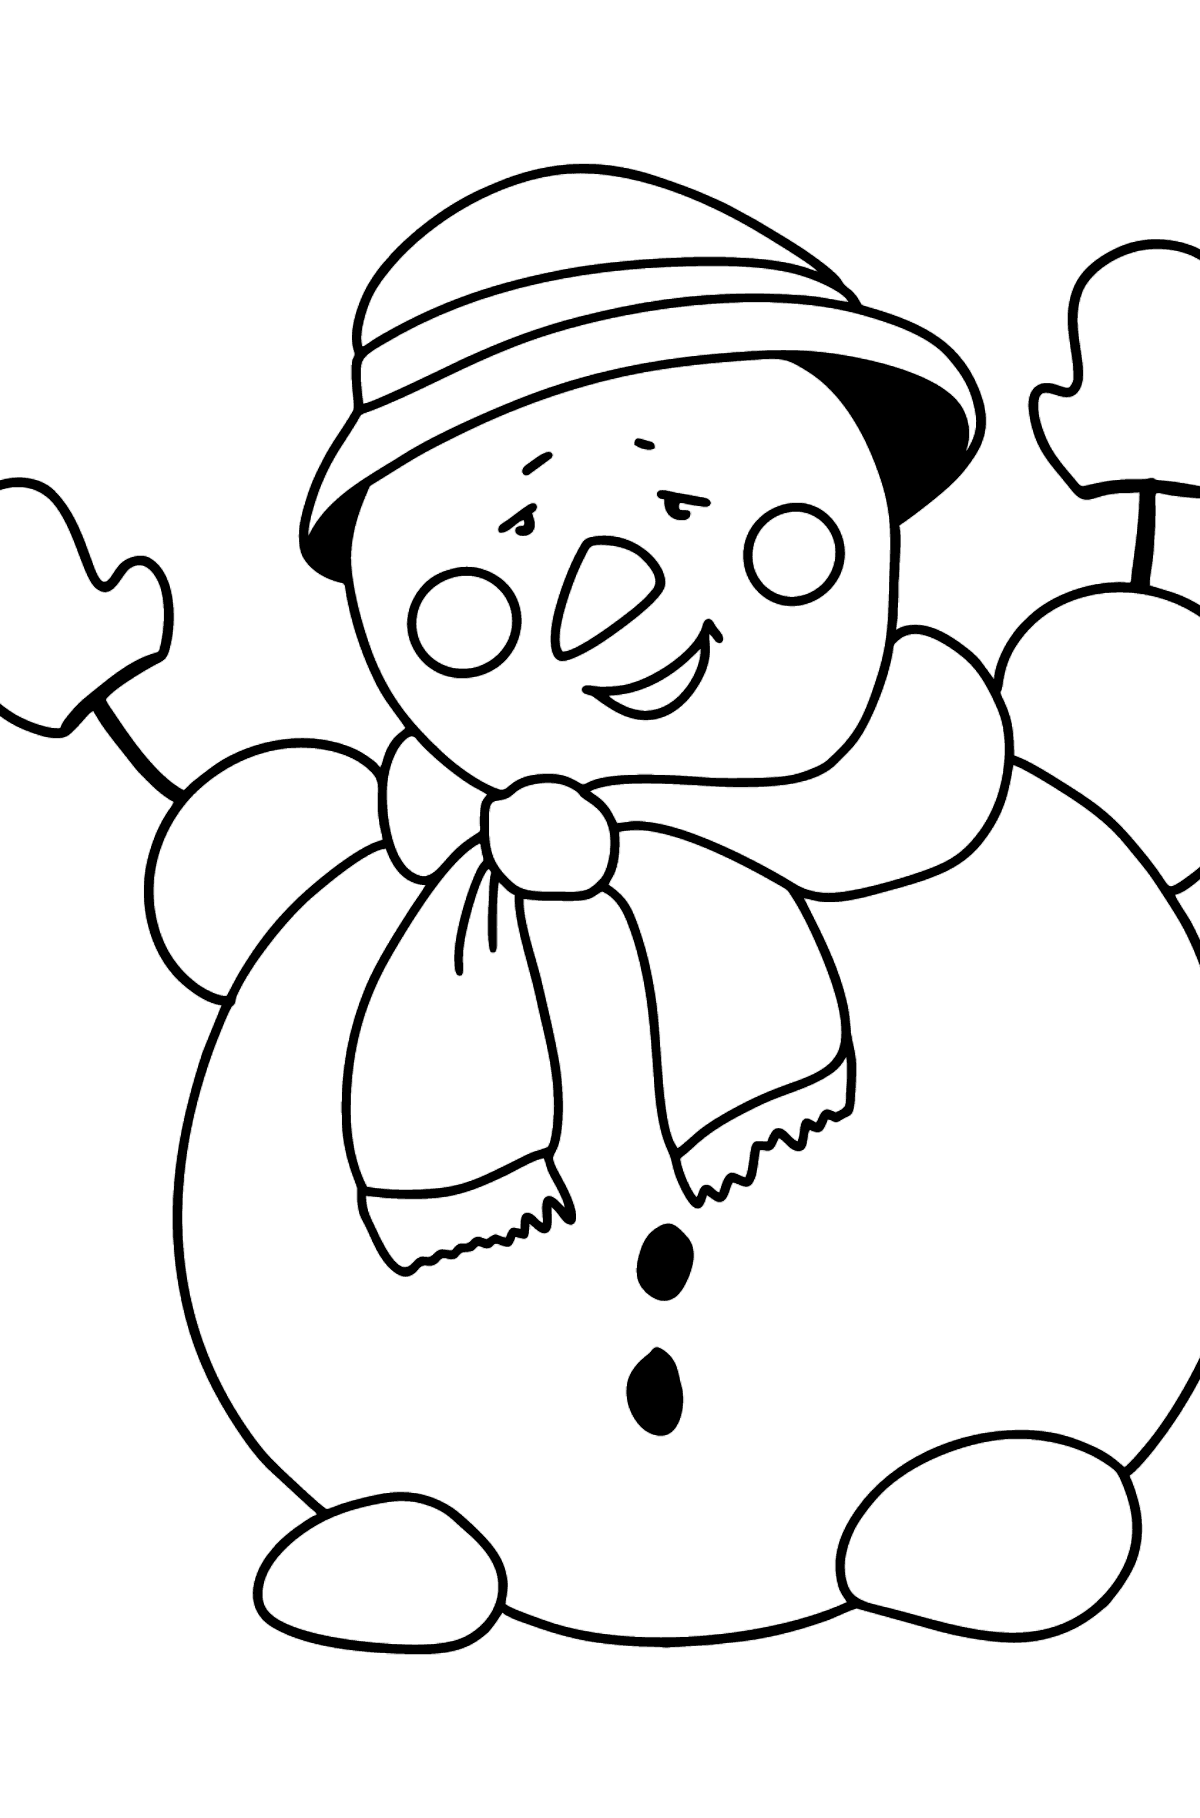 Kleurplaat gelukkige sneeuwpop - kleurplaten voor kinderen